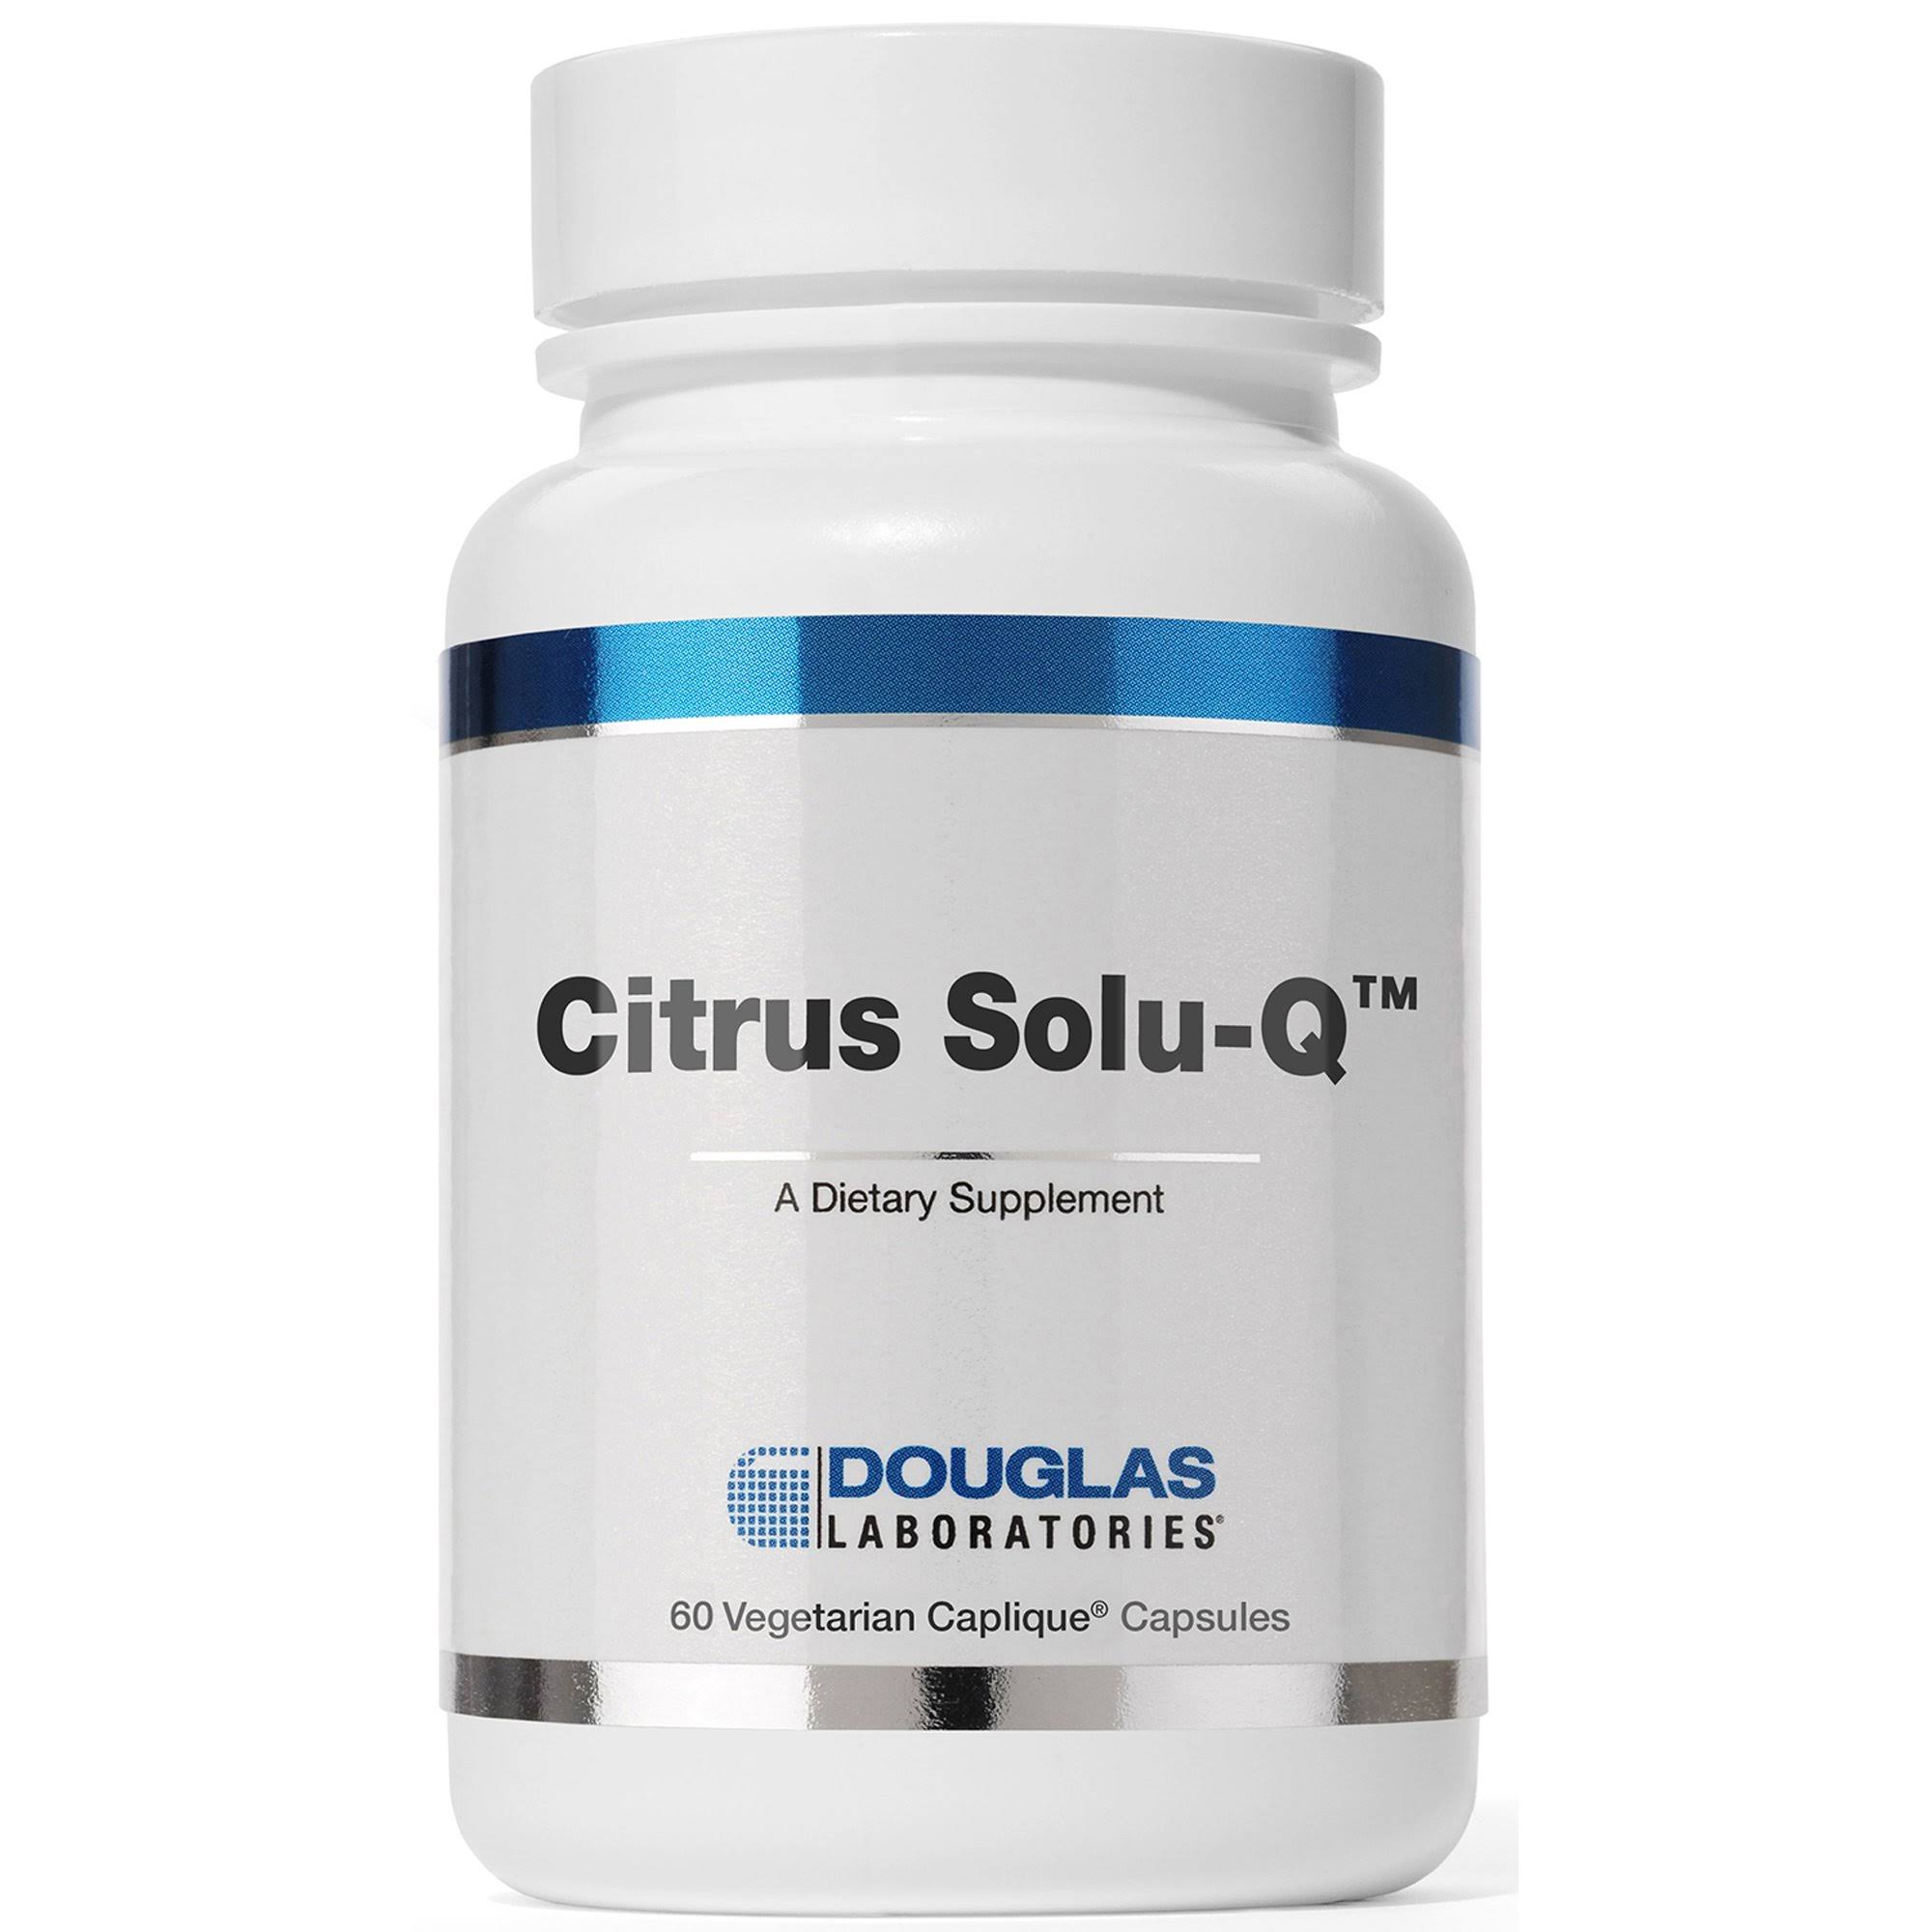 Douglas Laboratories - Citrus Solu-Q, 60 Capsules